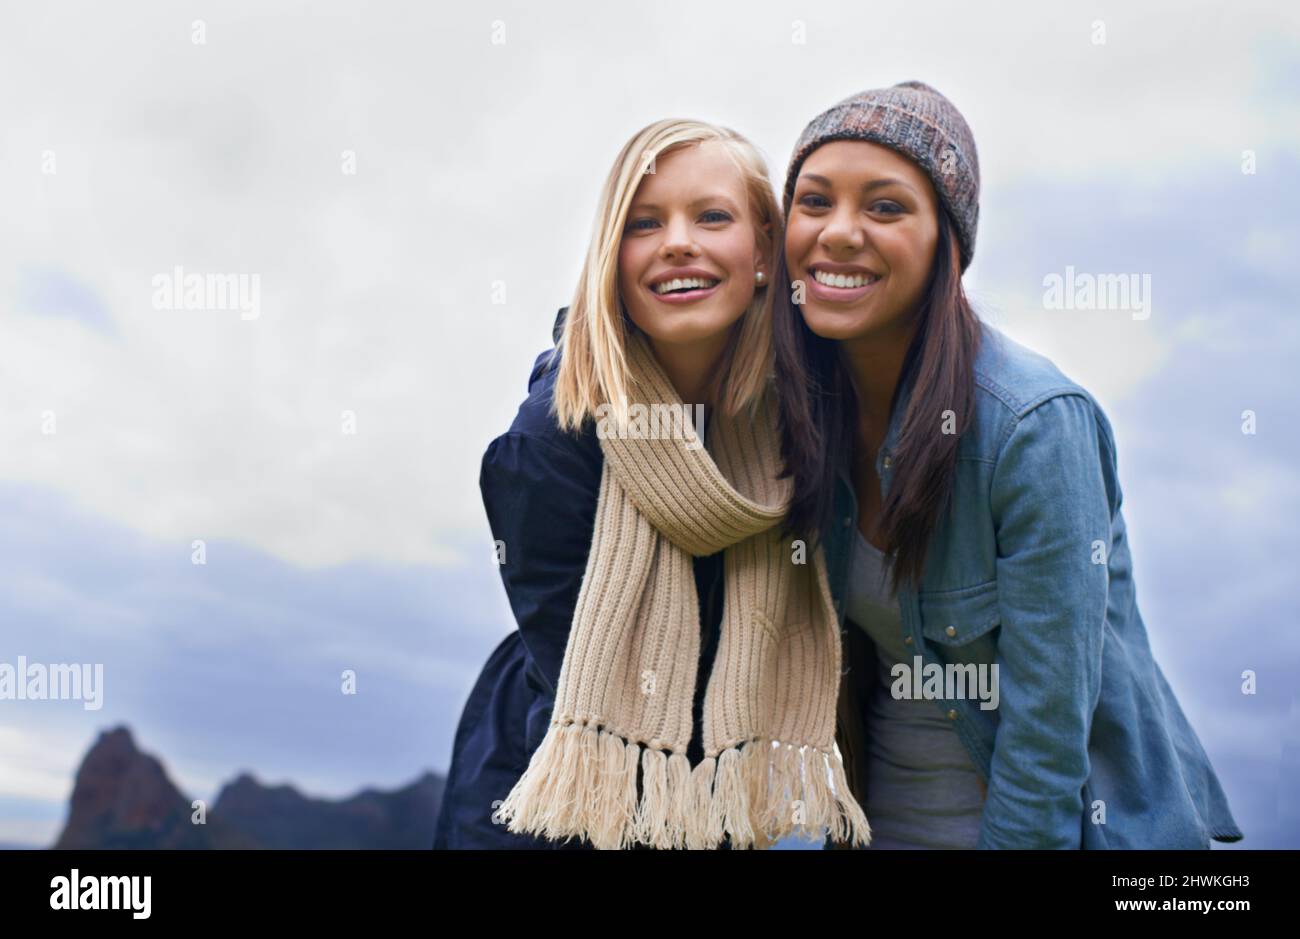 Halten Sie an, um die Aussicht zu genießen. Zwei junge Frauen, die draußen lachen. Stockfoto